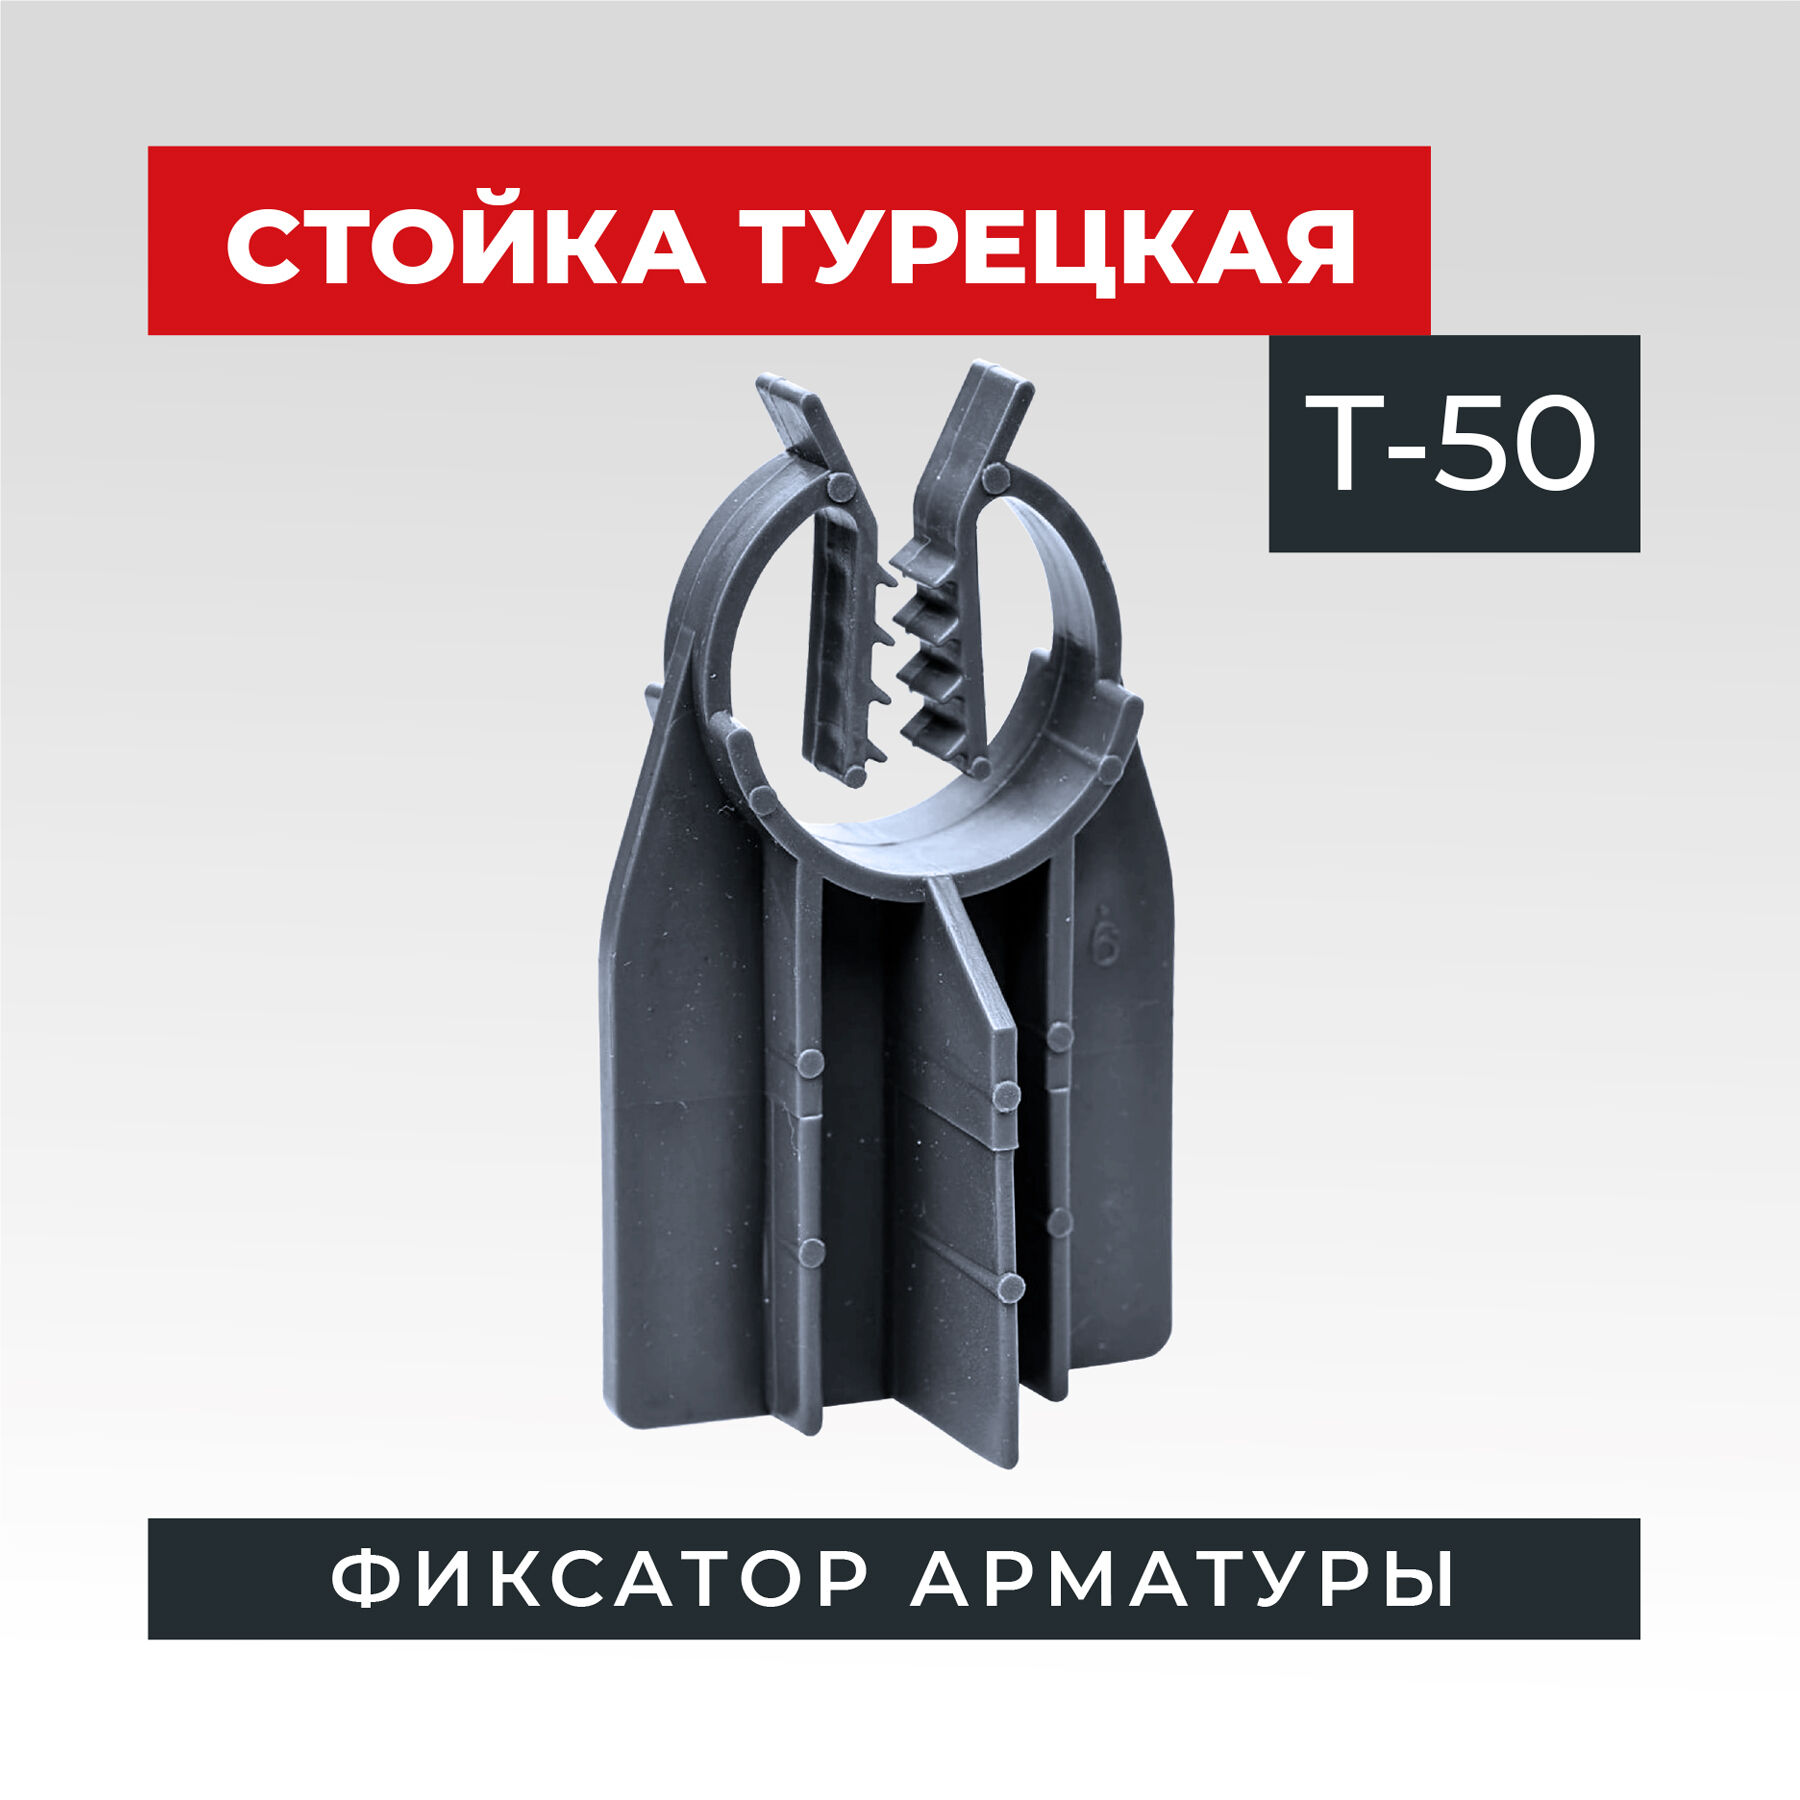 Фиксатор стойка турецкая Т-50, мешок 1000 штук